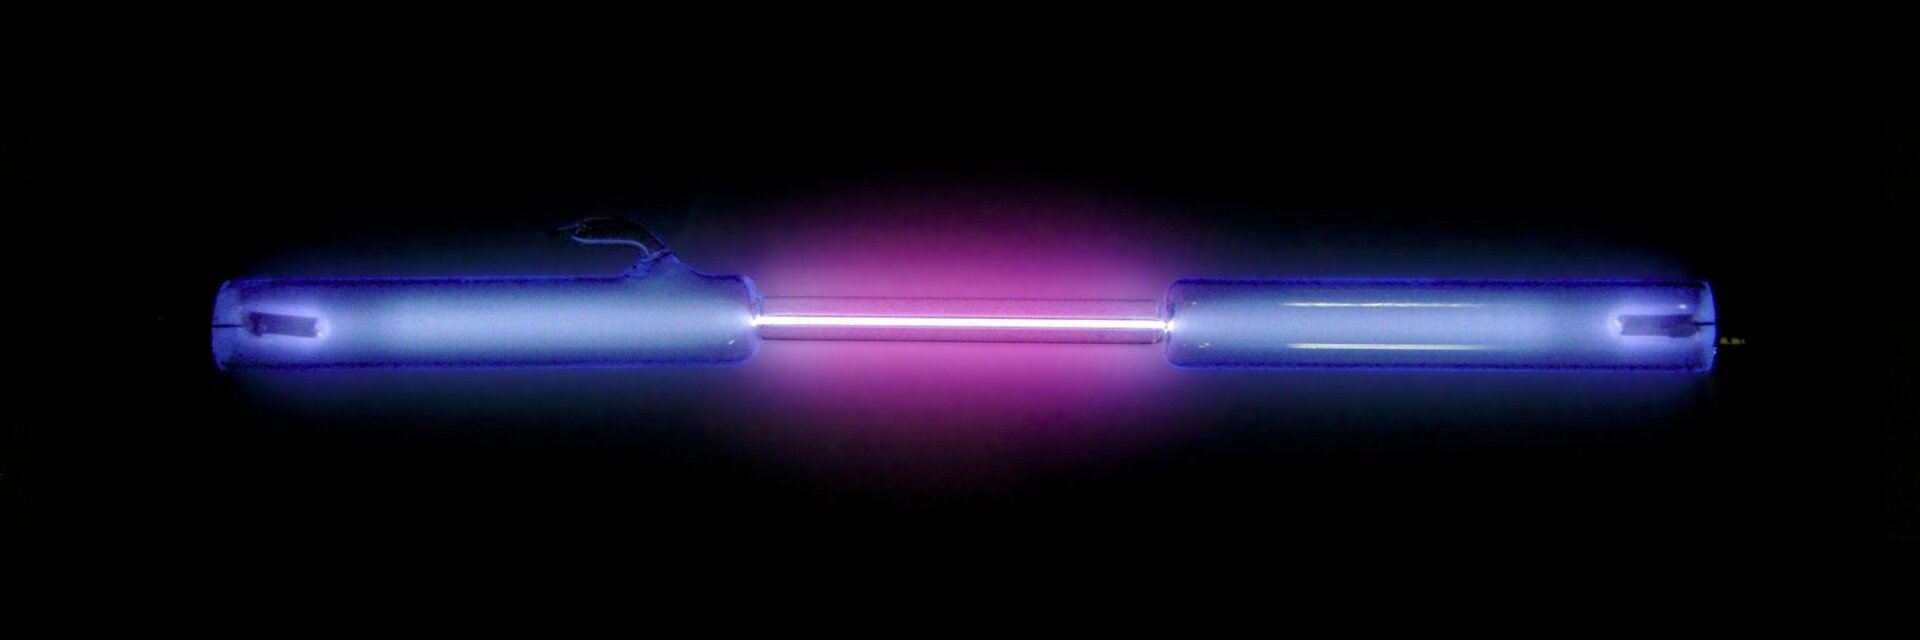 Zdjęcie przedstawia lampę wyładowczą w postaci szklanej rurki z dwiema elektrodami wypełnionej rozrzedzonym wodorem. Rurka ta w samym środku ma zwężony odcinek, który po podłączeniu elektrod do źródła prądu o wysokim napięciu świeci intensywnie purpurowym blaskiem.